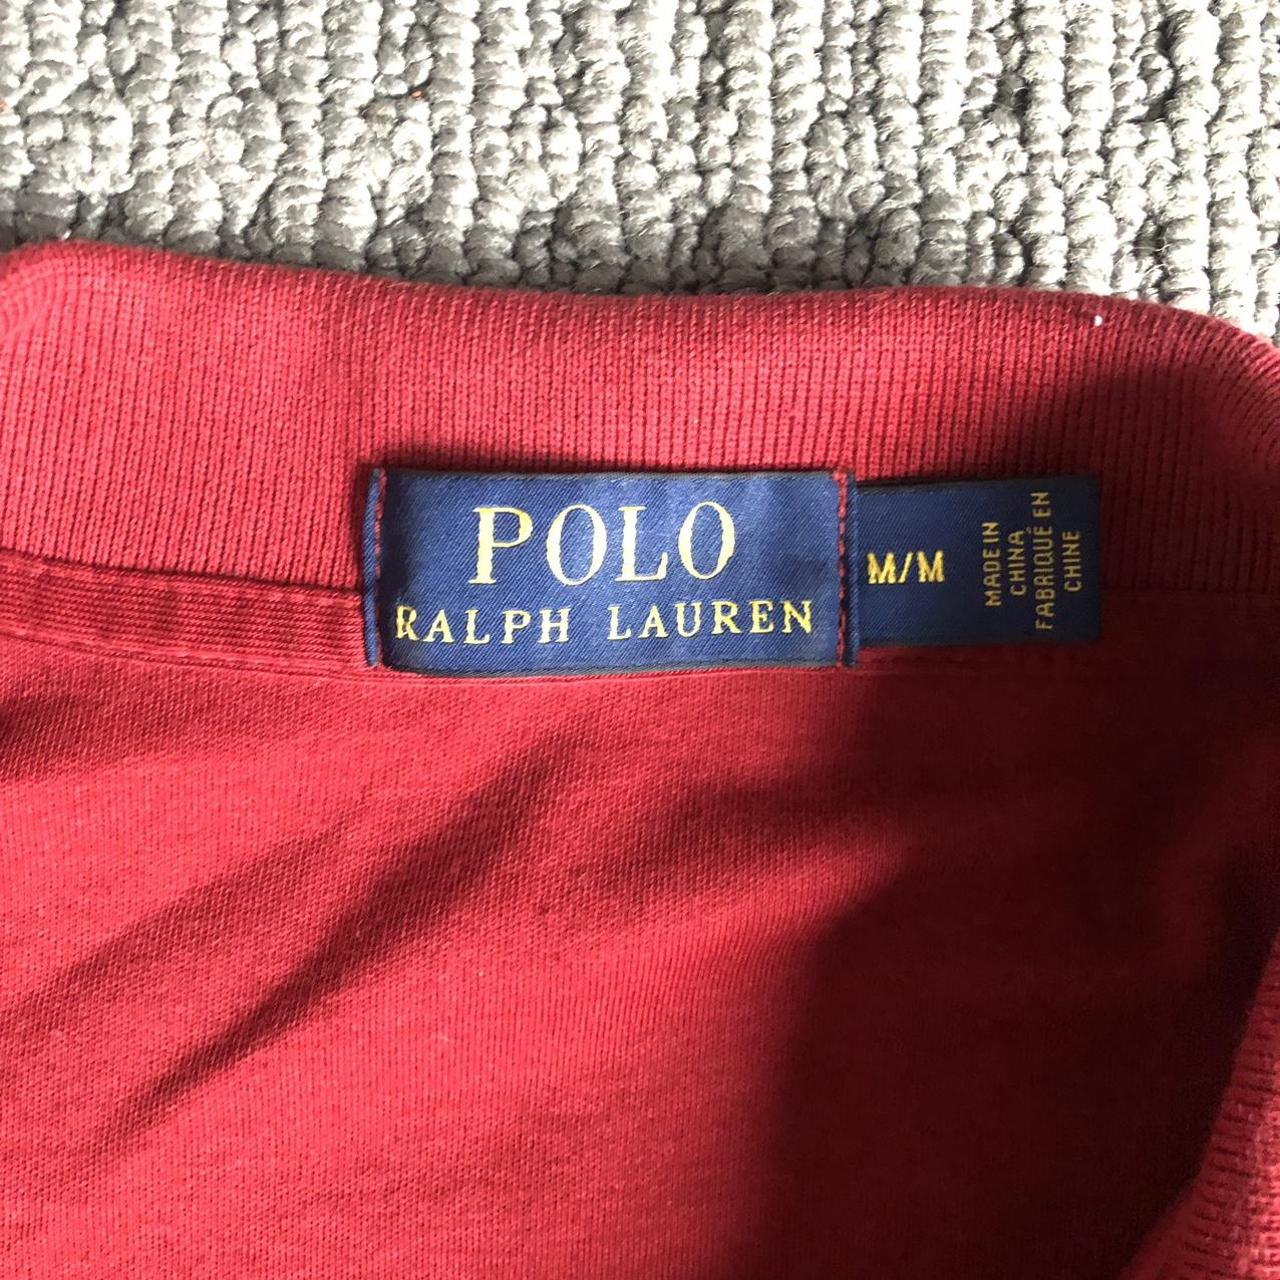 Ralph Lauren Polo Shirt • Lovely Polo shirt • In... - Depop